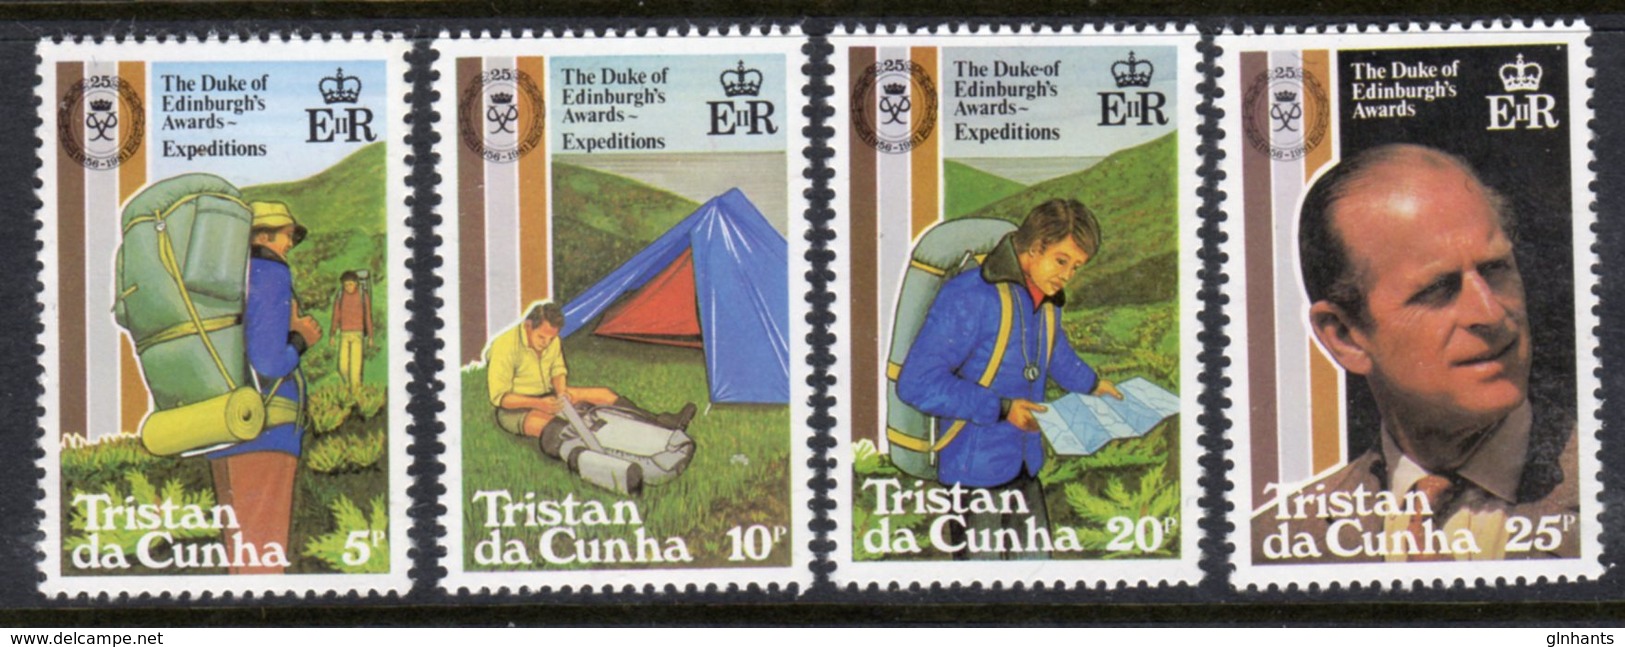 TRISTAN DA CUNHA - 1981 DUKE OF EDINBURGH AWARD ANNIVERSARY SET (4V) FINE MNH ** SG 311-314 - Tristan Da Cunha